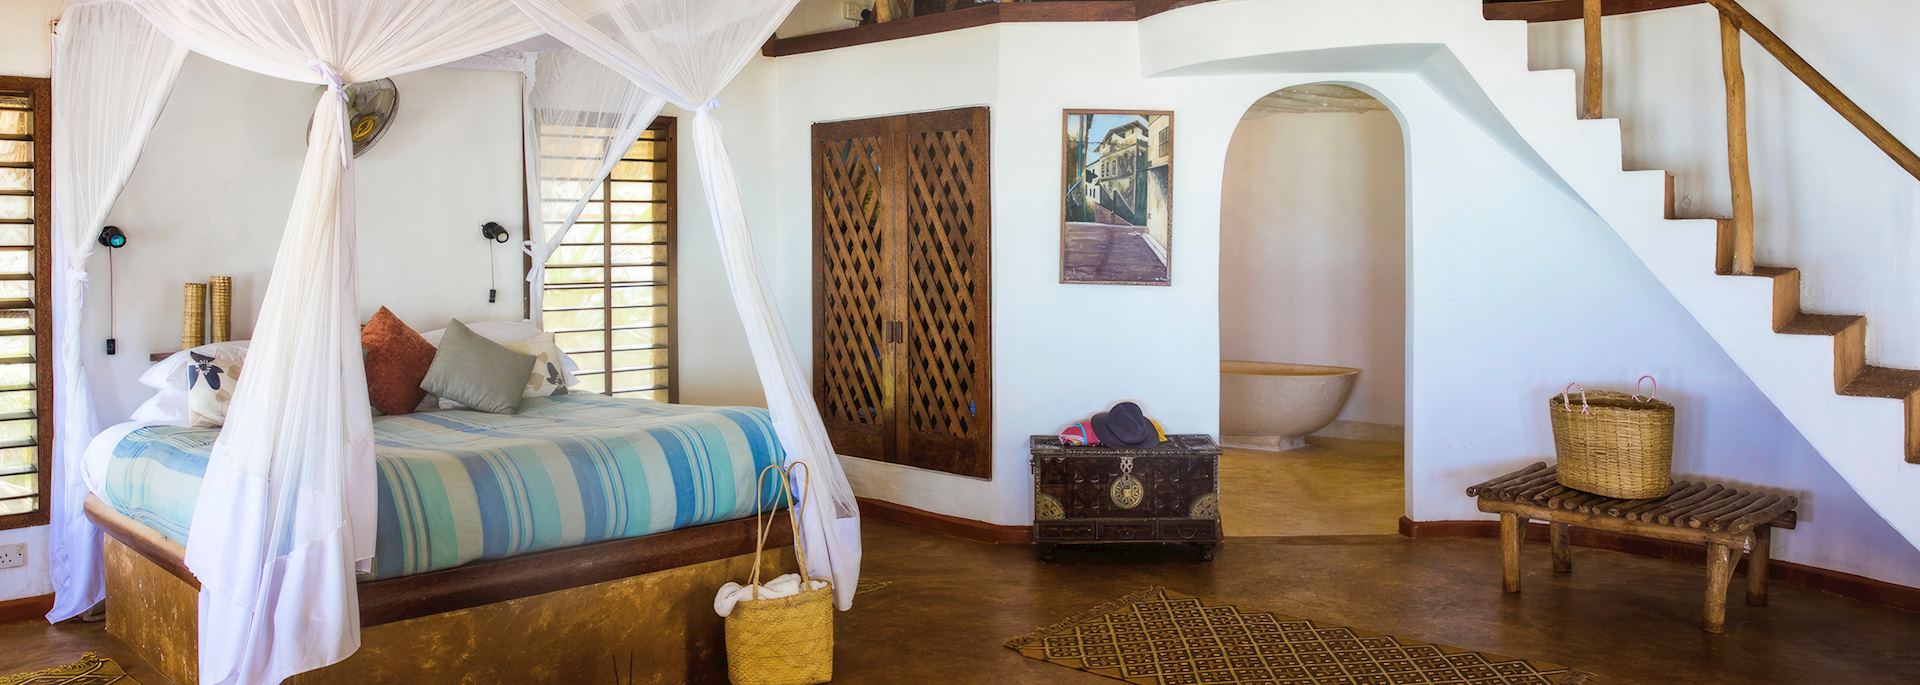 Guest room at Matemwe Lodge